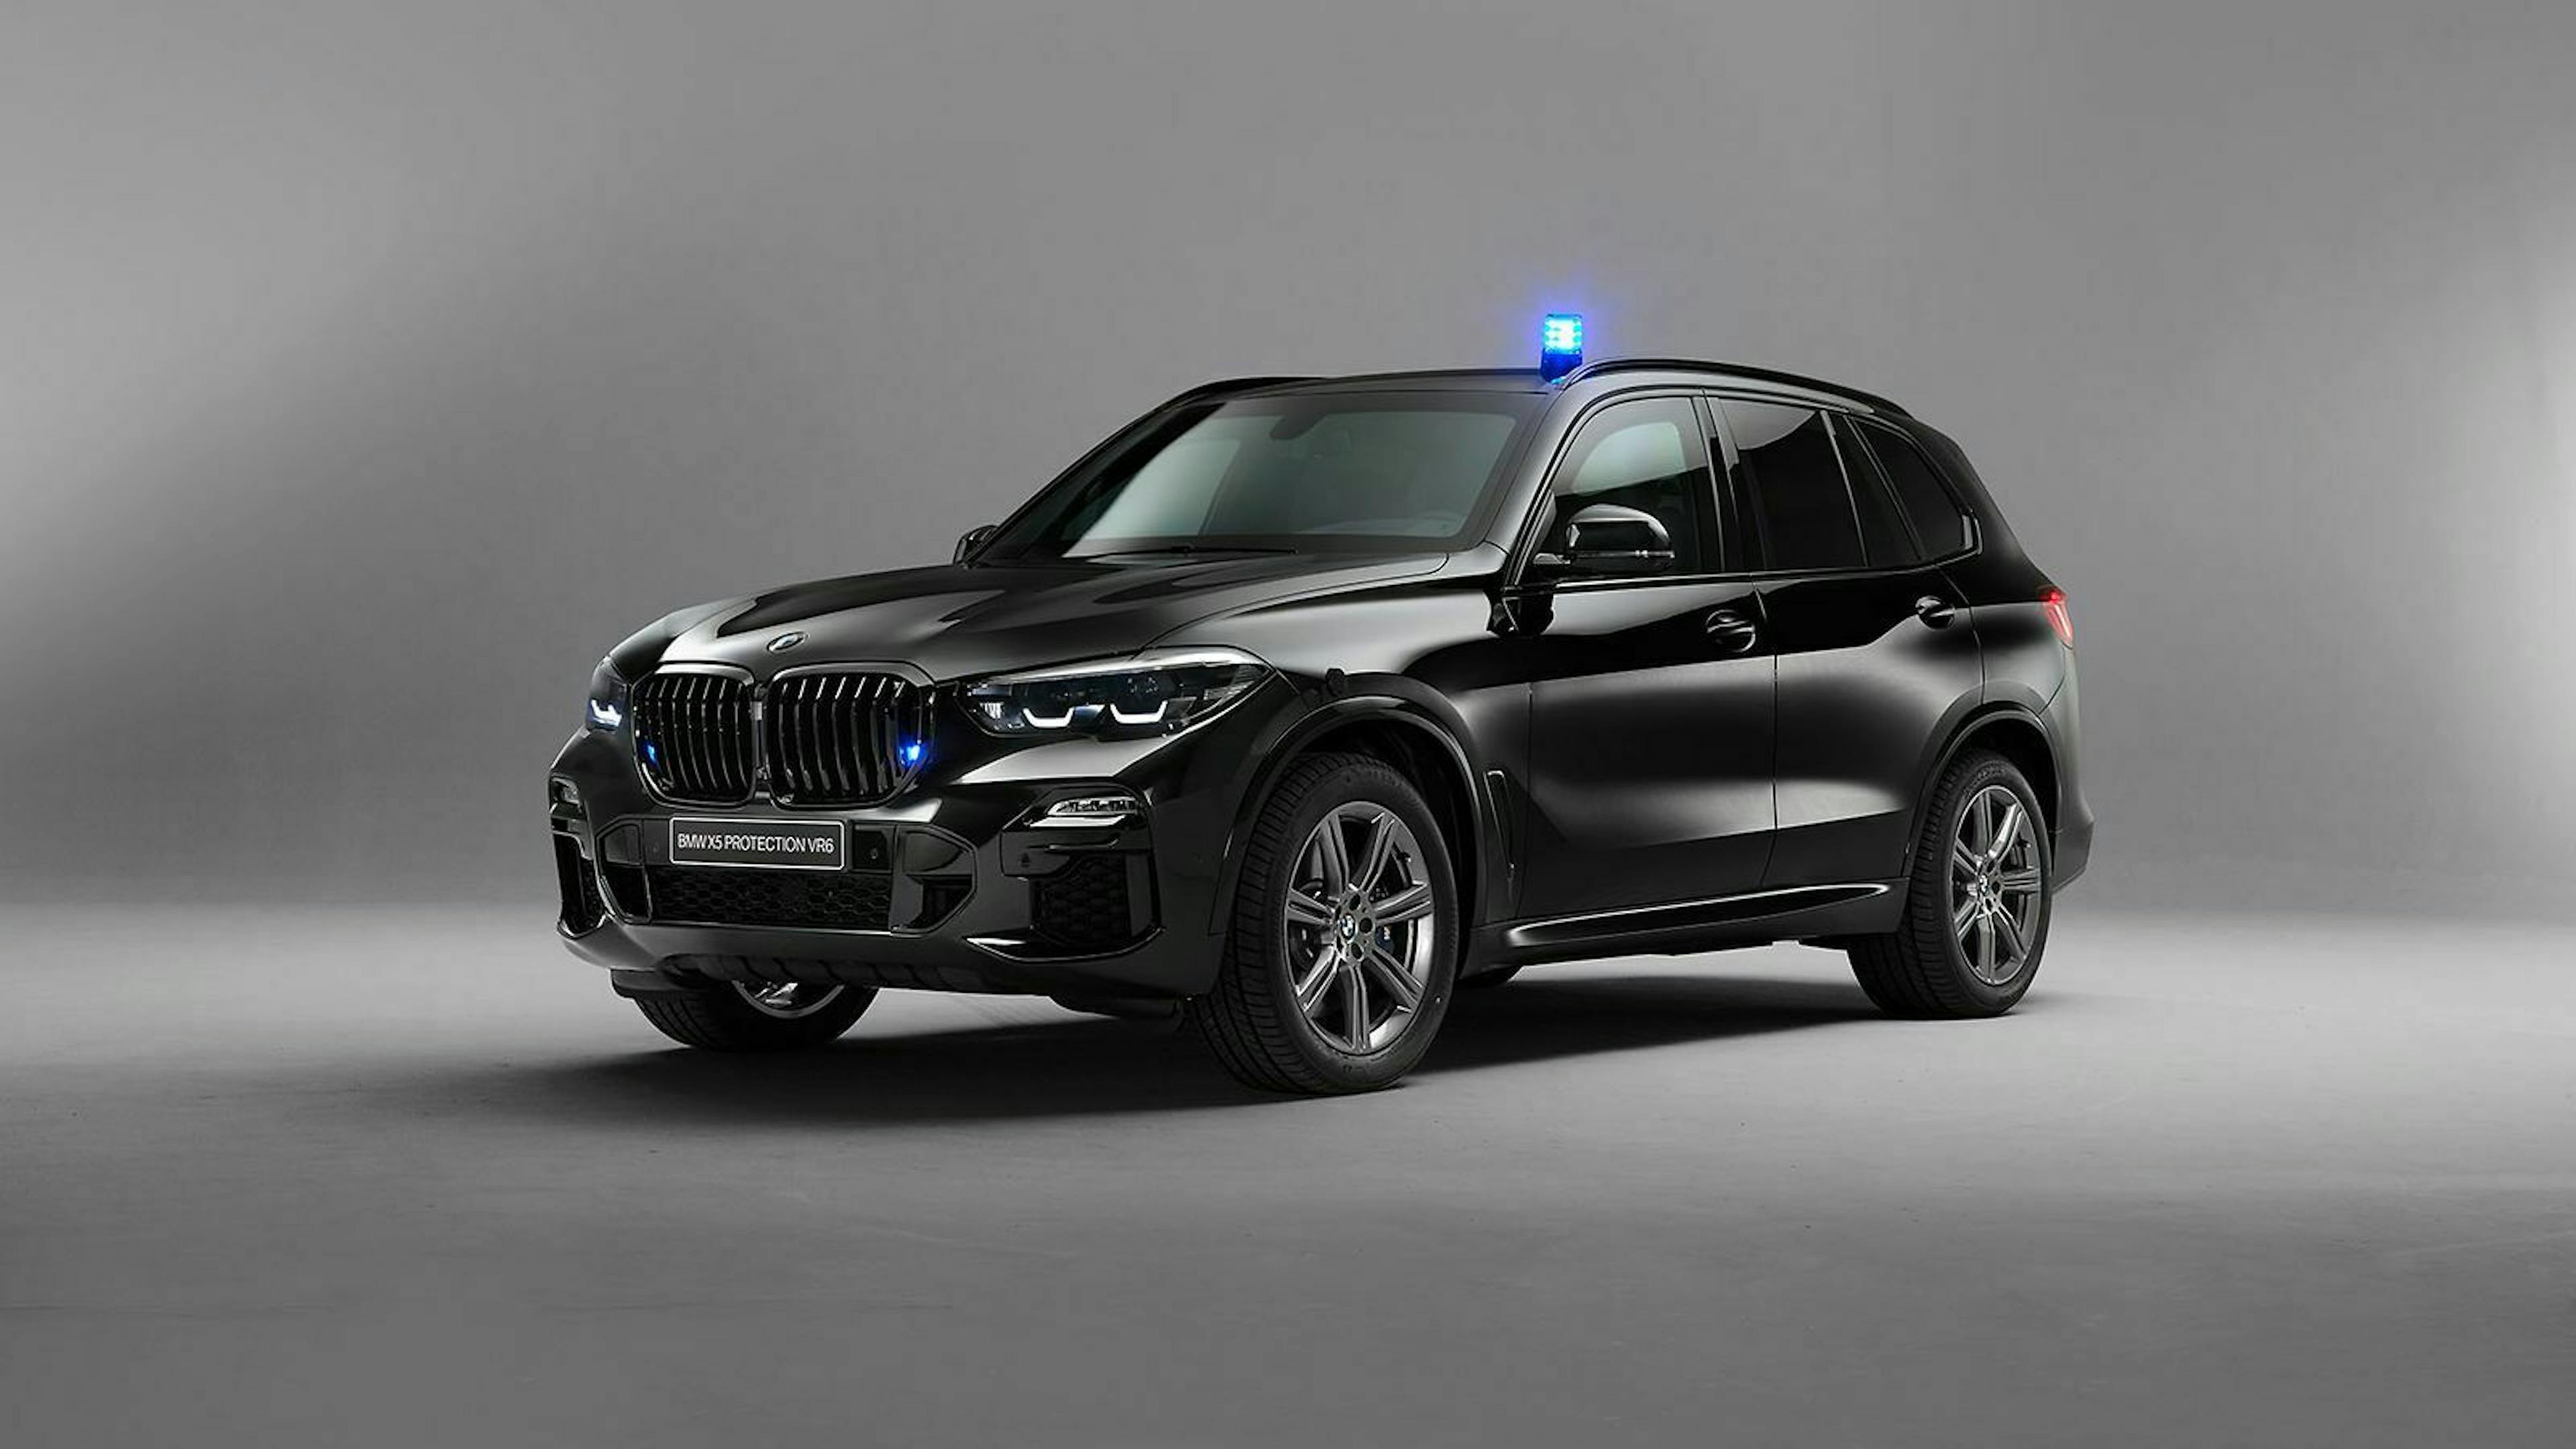  Der BMW X5 Protection VR6 besitzt 30 Millimeter dickes Sicherheitsglas und eine schussichere Panzerung